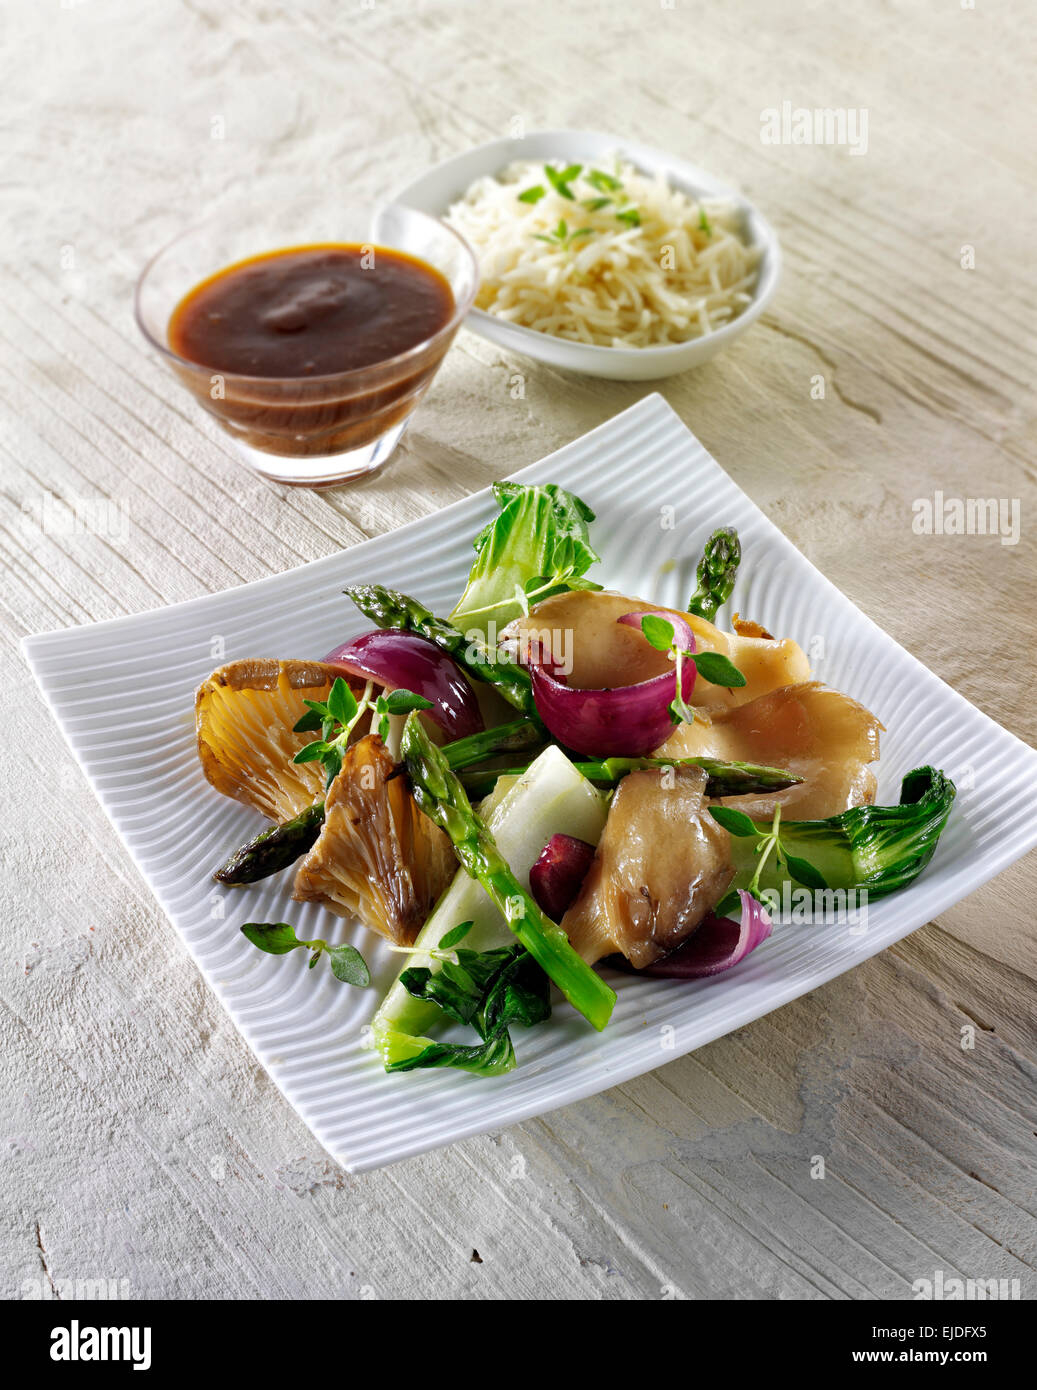 Chinois Oriental sauté végétarien de légumes et champignons Banque D'Images